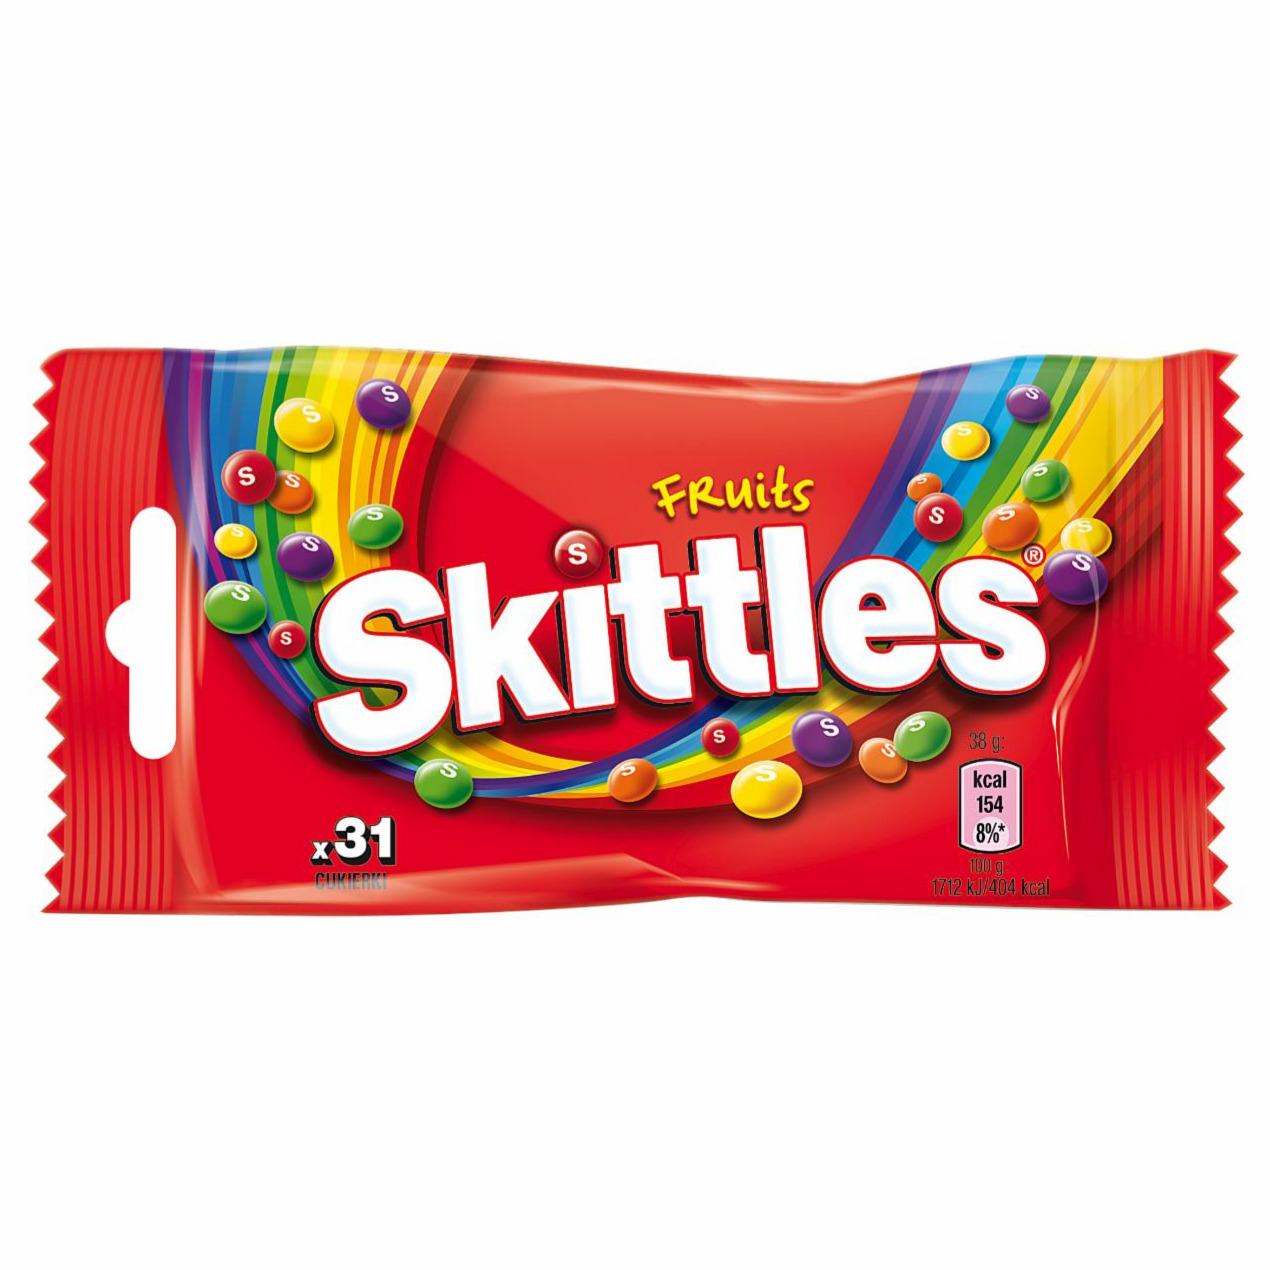 Zdjęcia - Skittles Fruits Cukierki do żucia 38 g